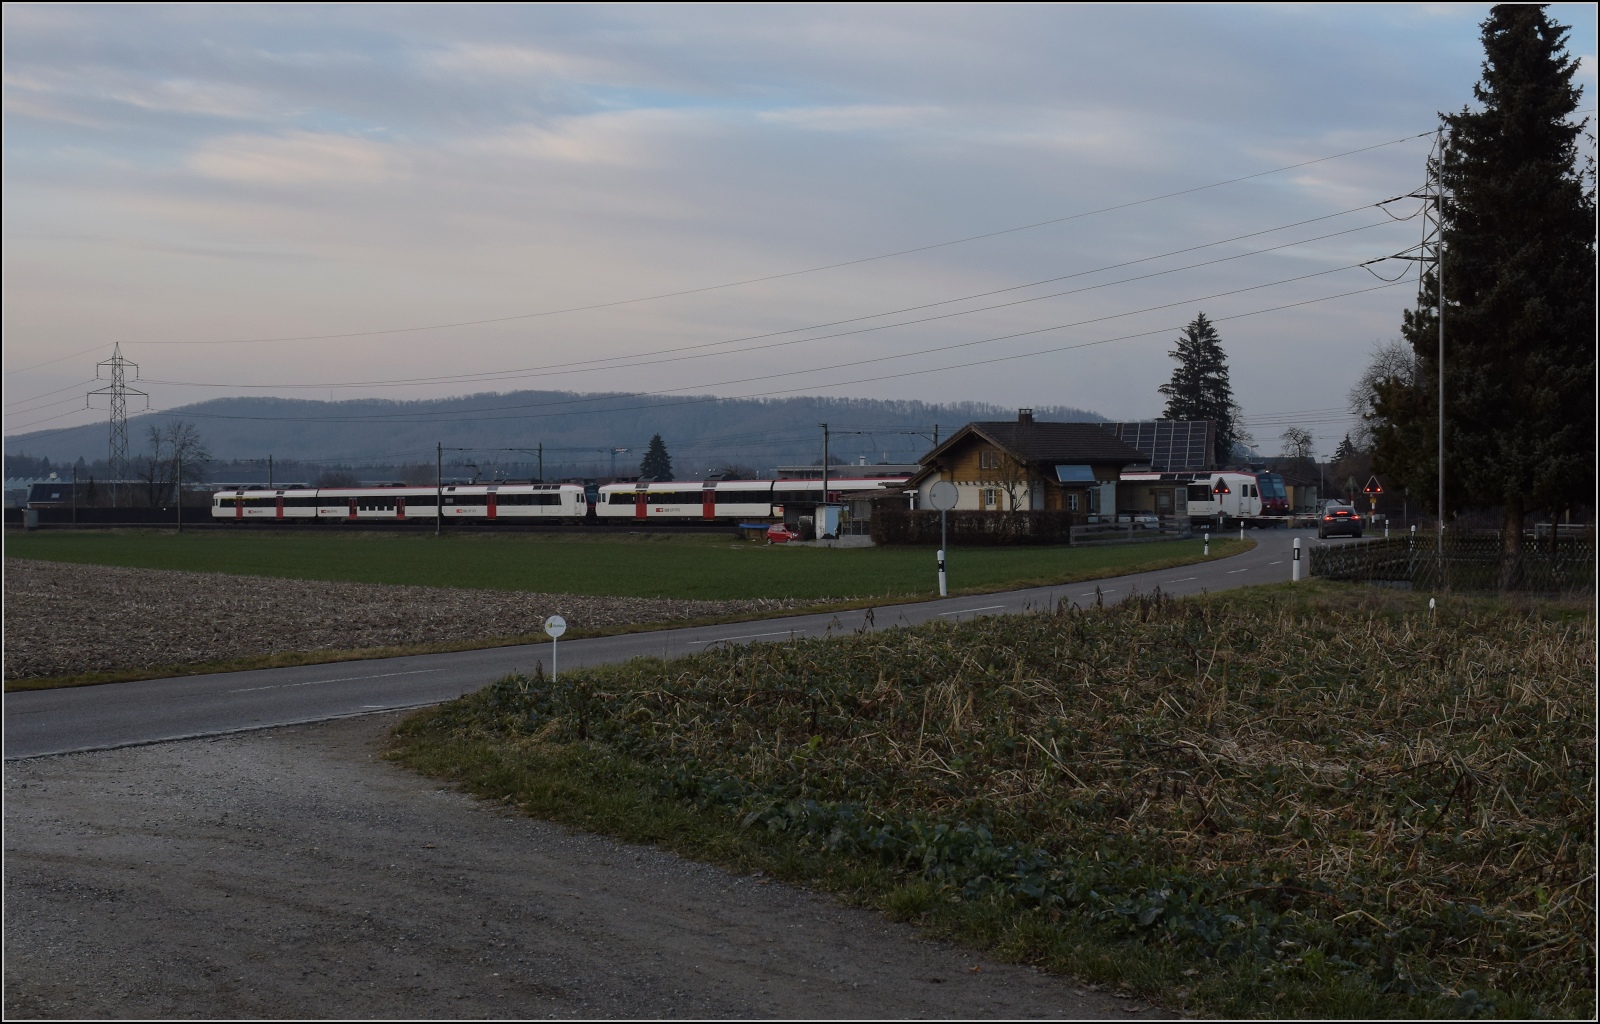 Am fast dauerverschlossenen Bahnübergang.

Zwei unbekannt gebliebene RBDe 560 in Hendschiken. Februar 2023.